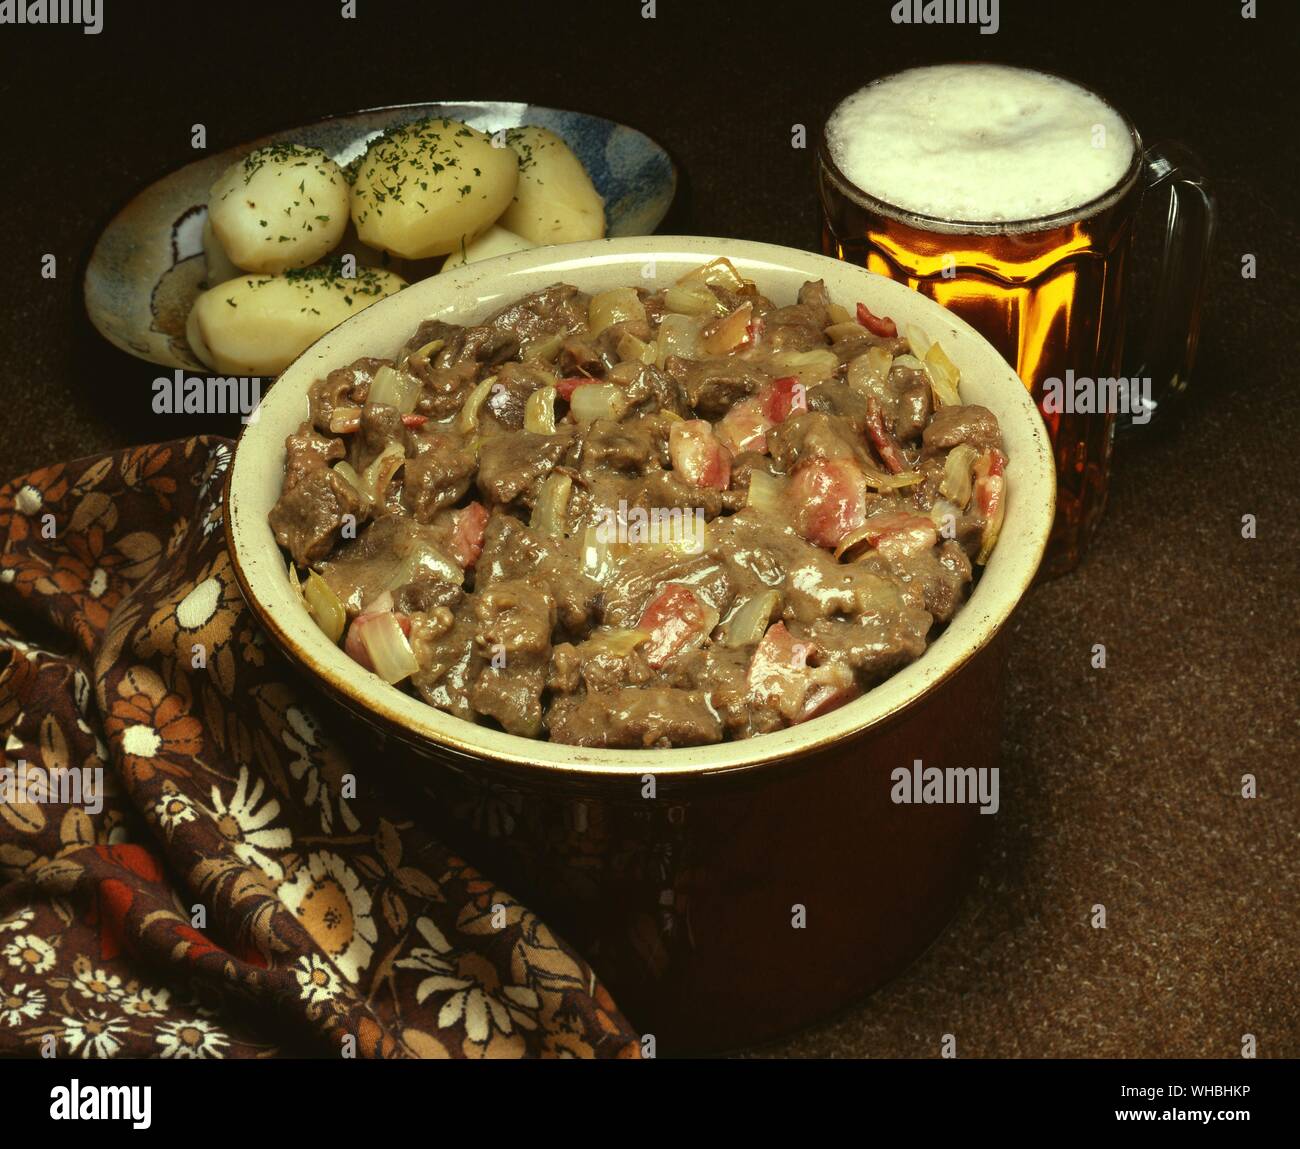 Carbonnade de boeuf : un ragoût de boeuf et à la bière contenant des oignons et les poivrons , complet avec une pinte de bière et des pommes de terre Banque D'Images